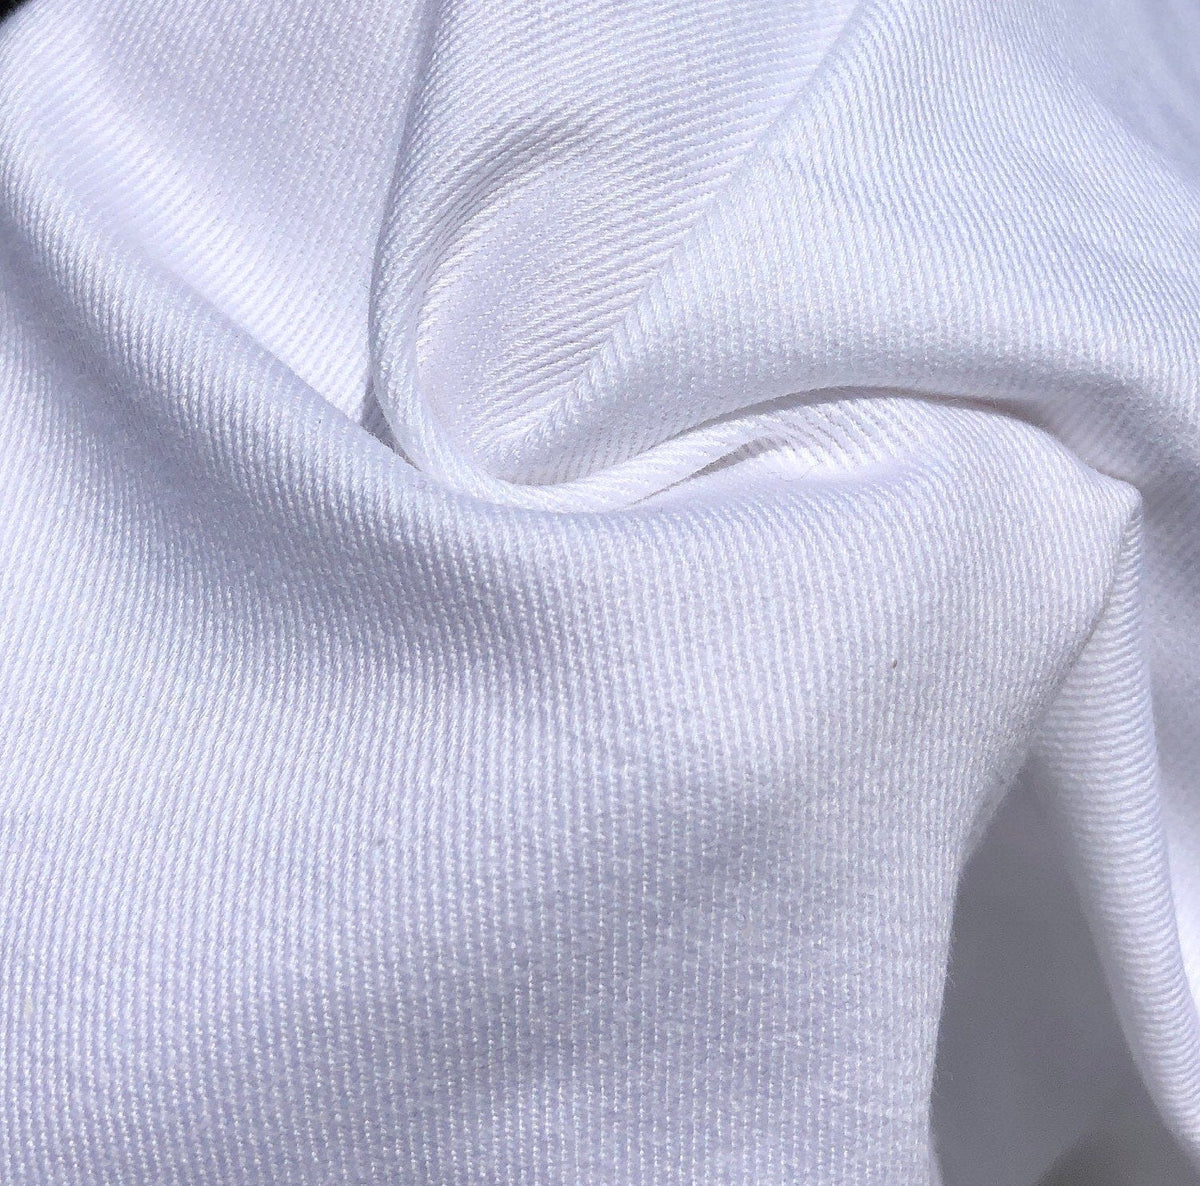 Solid Bright White, Cotton Twill Fabric, 8oz., 100% Cotton